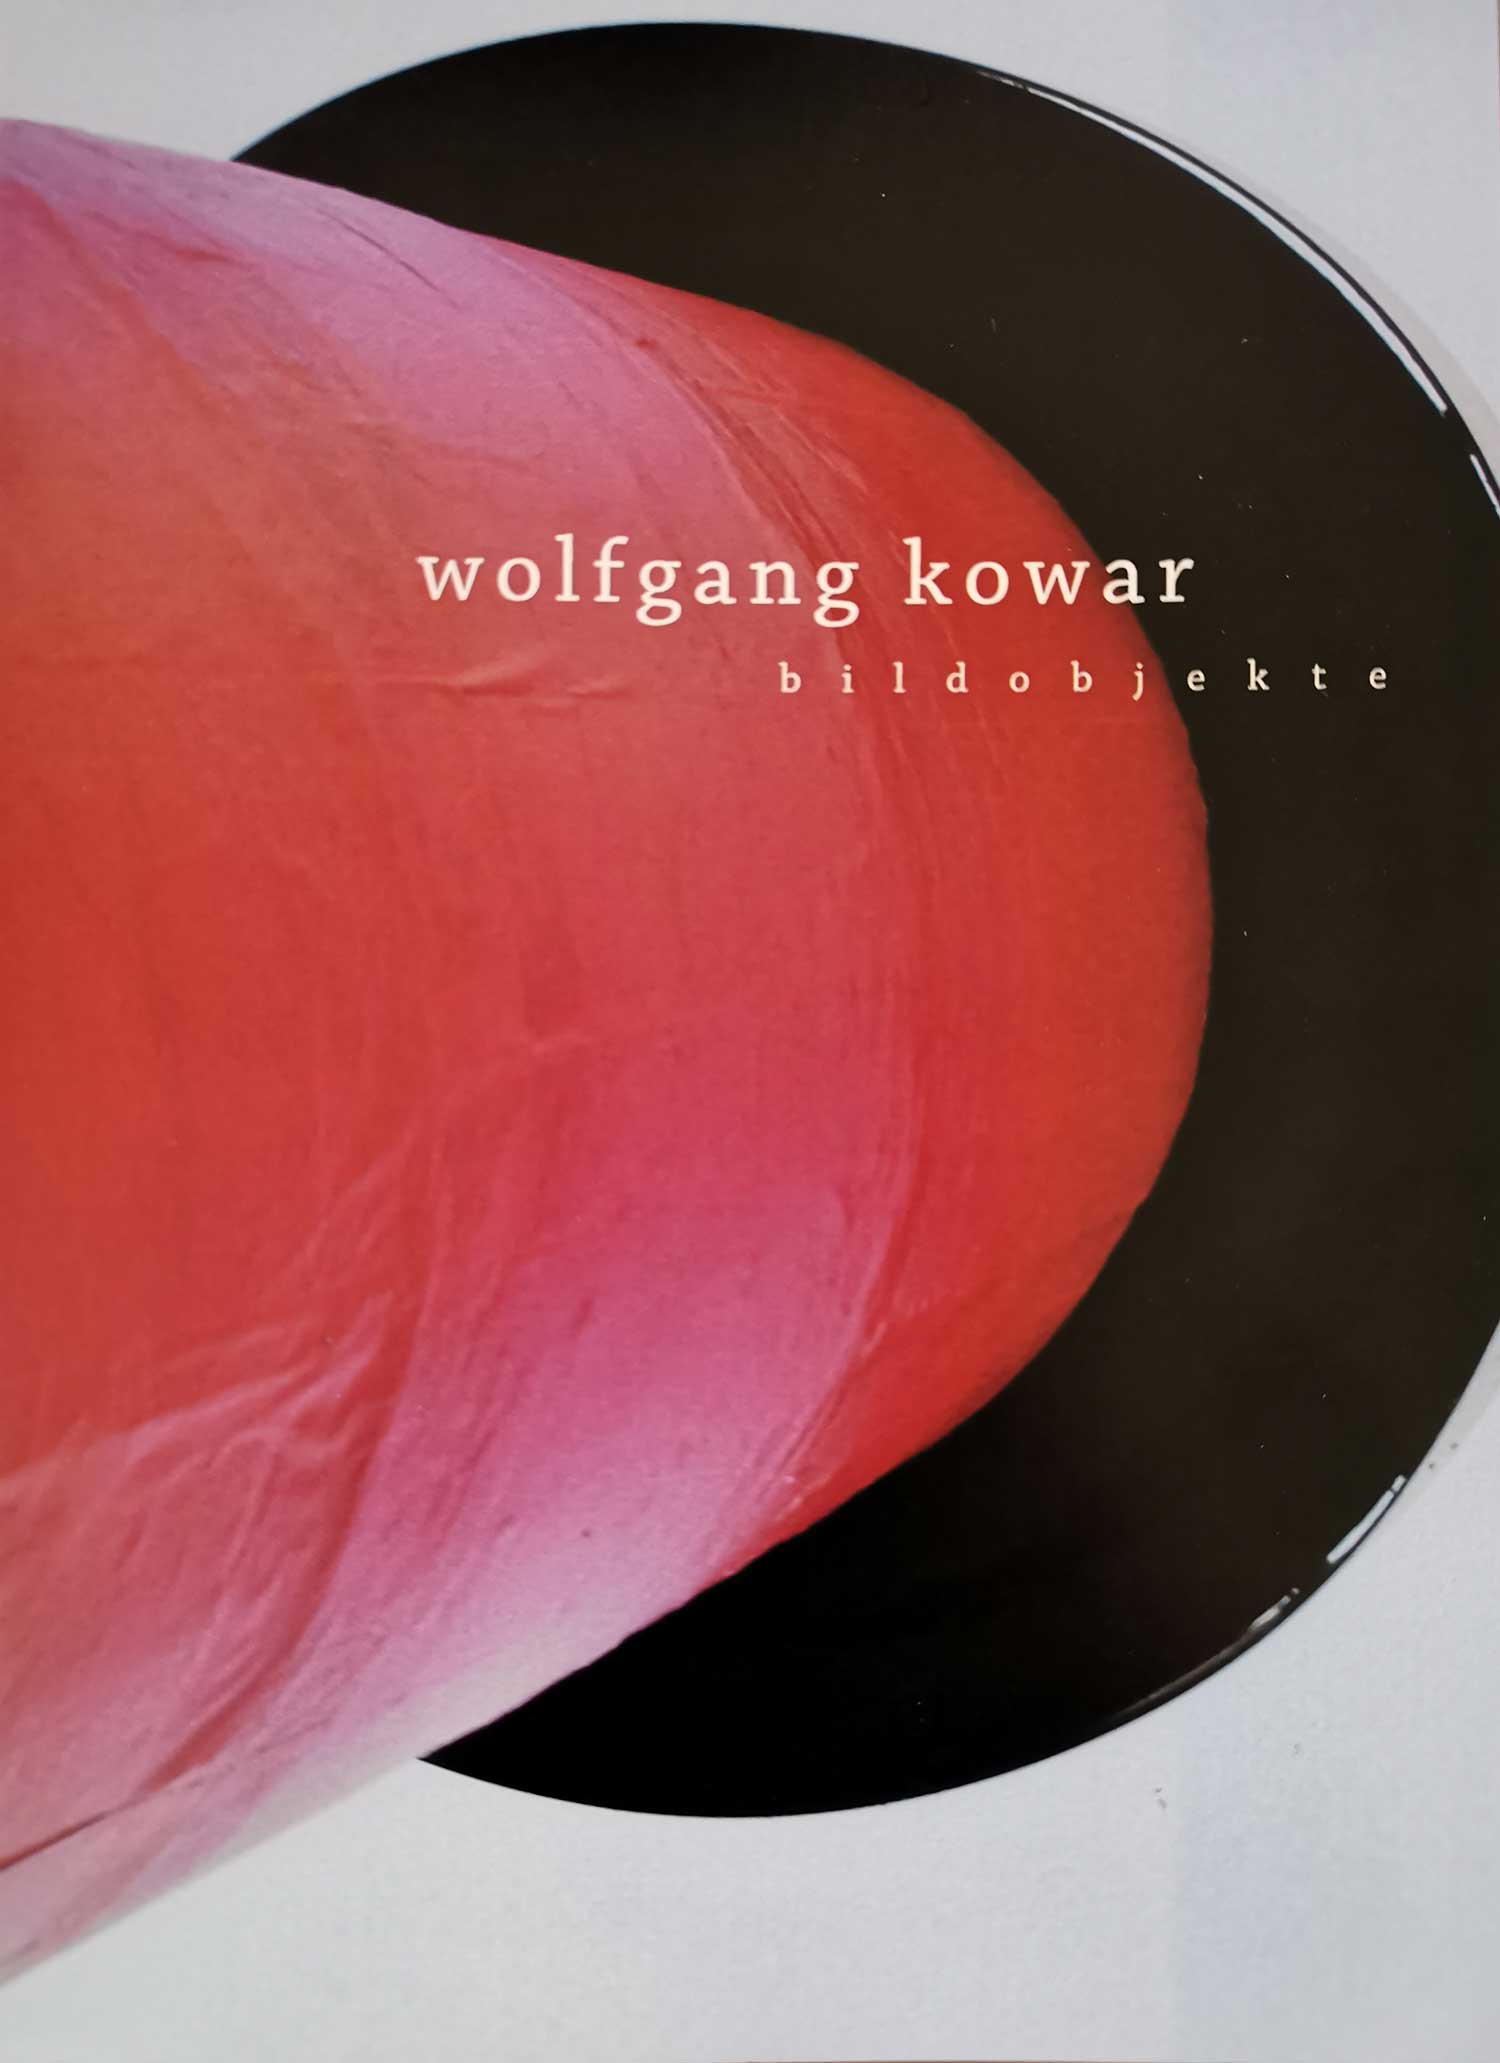 catalog Wolfgang Kowar bildobjekte